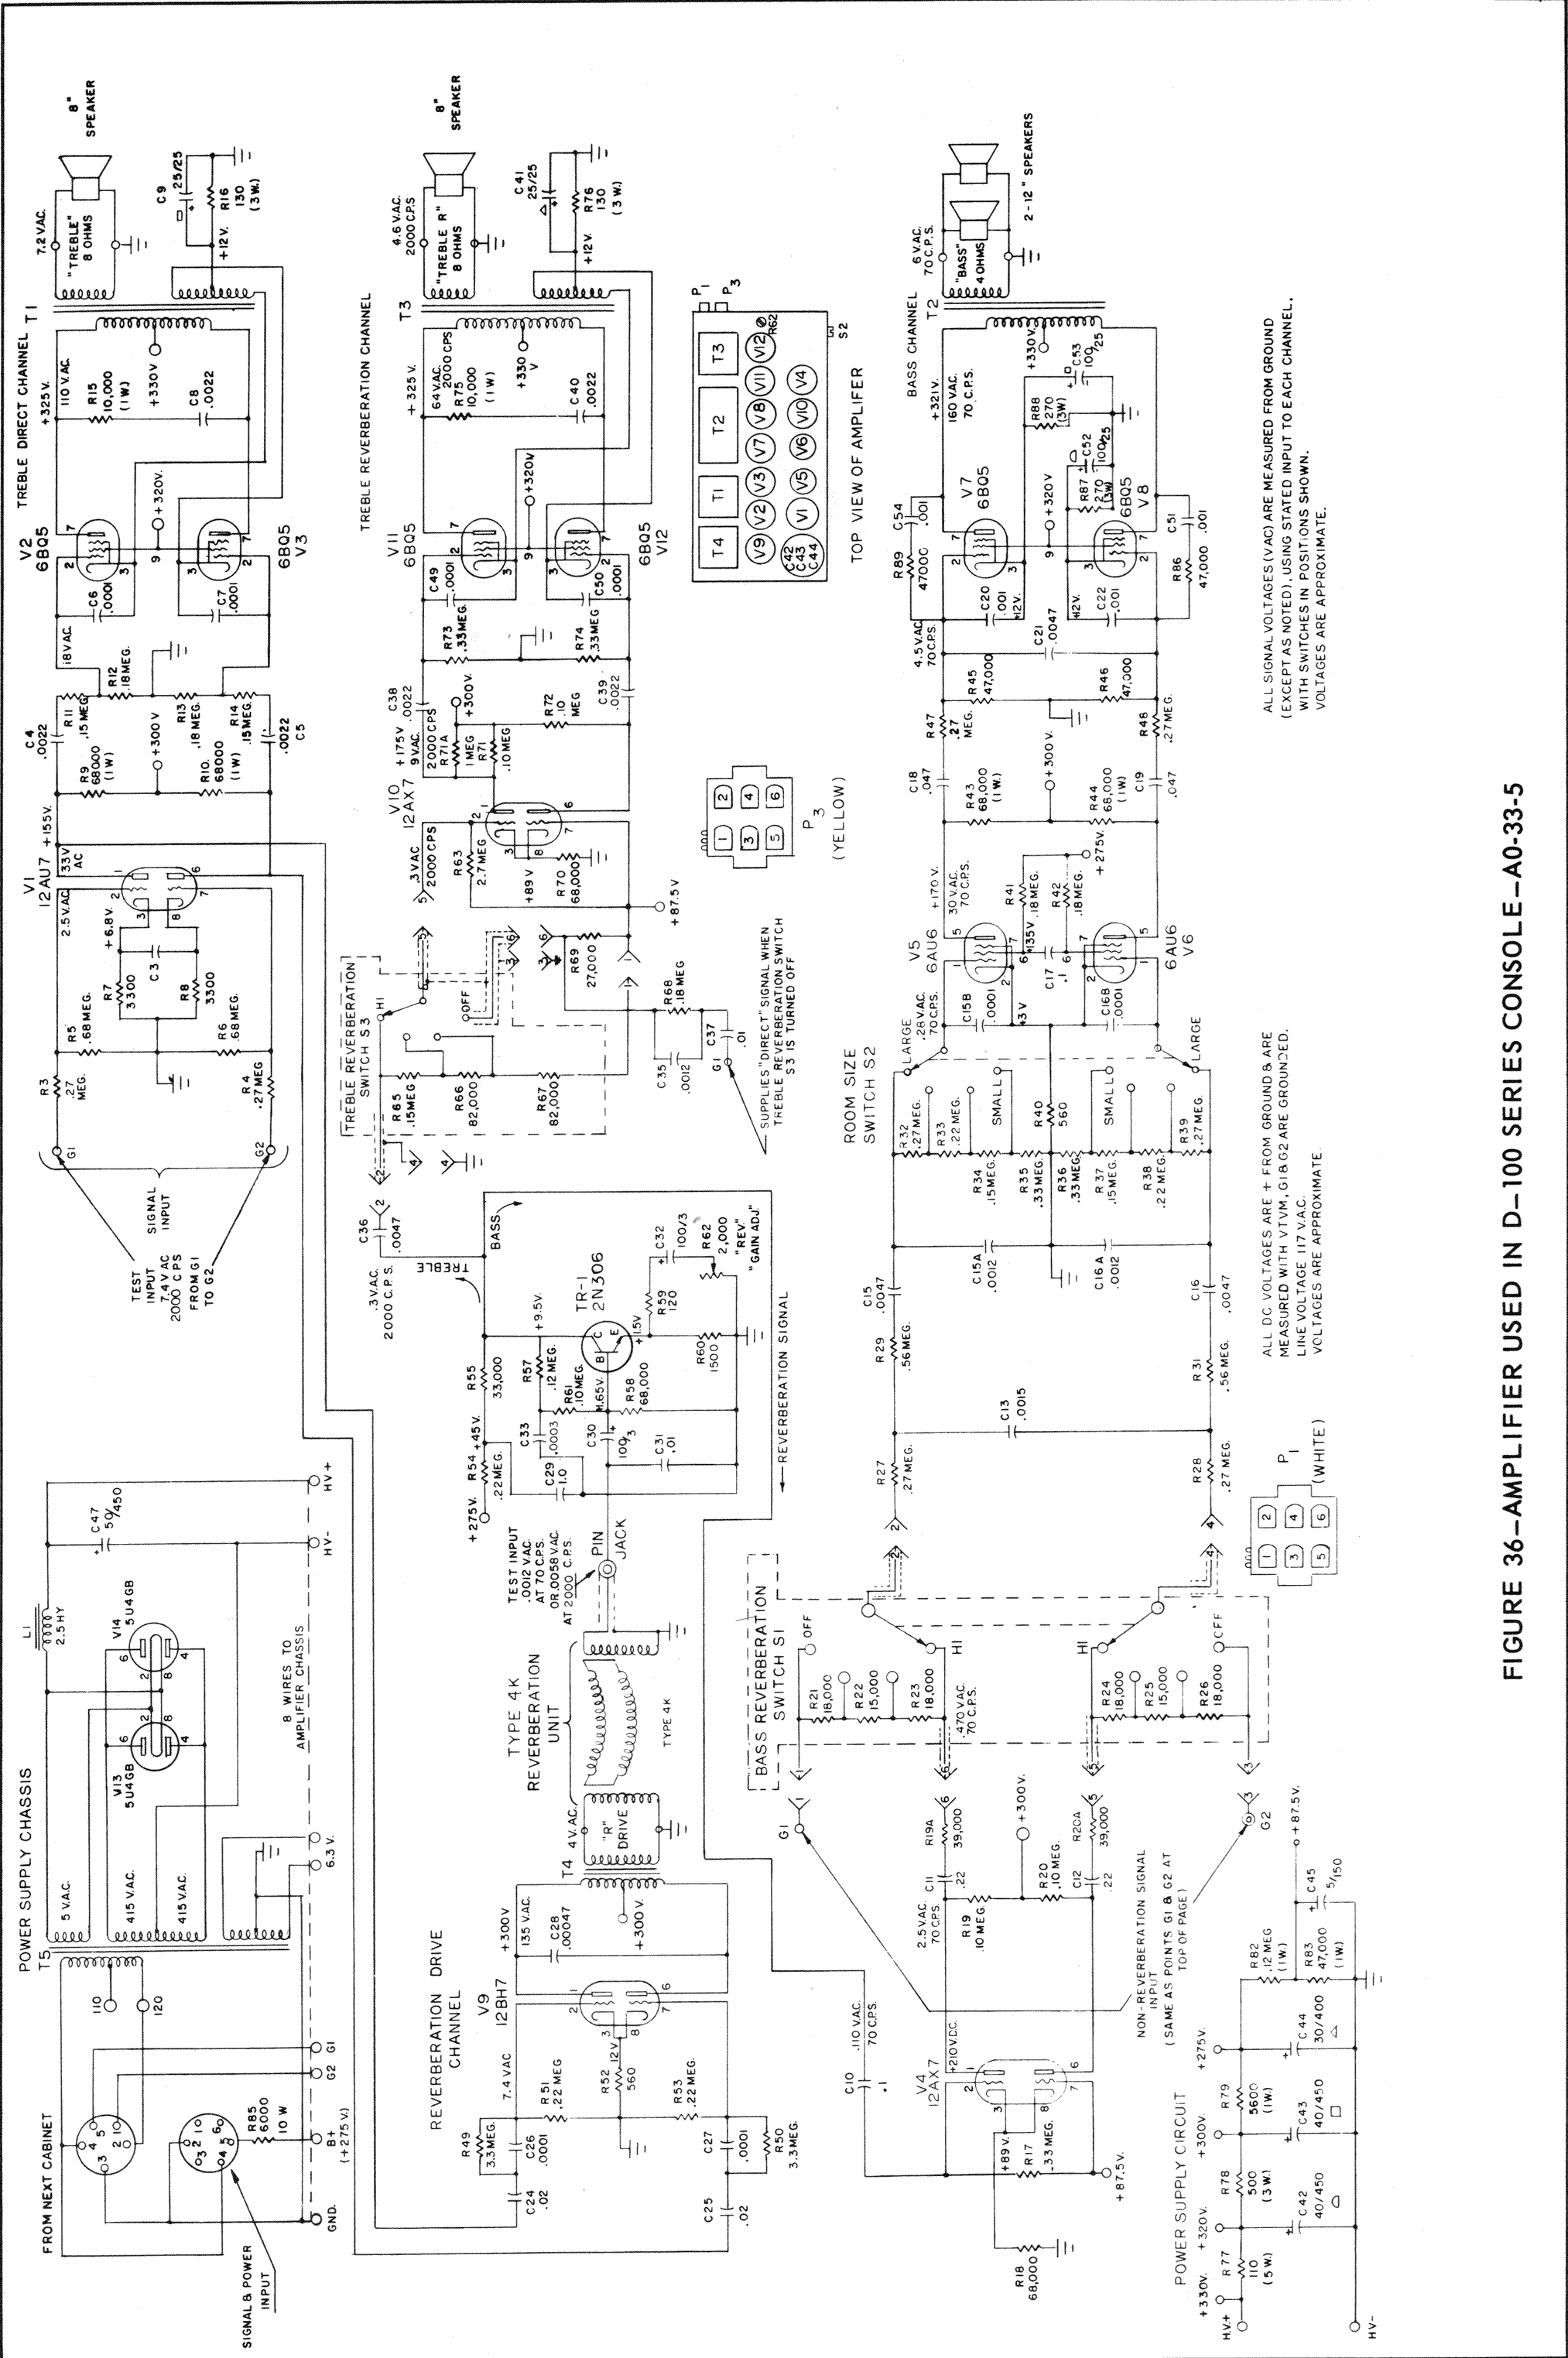 Wiring Manual PDF: 100 V Motor Wiring Diagram